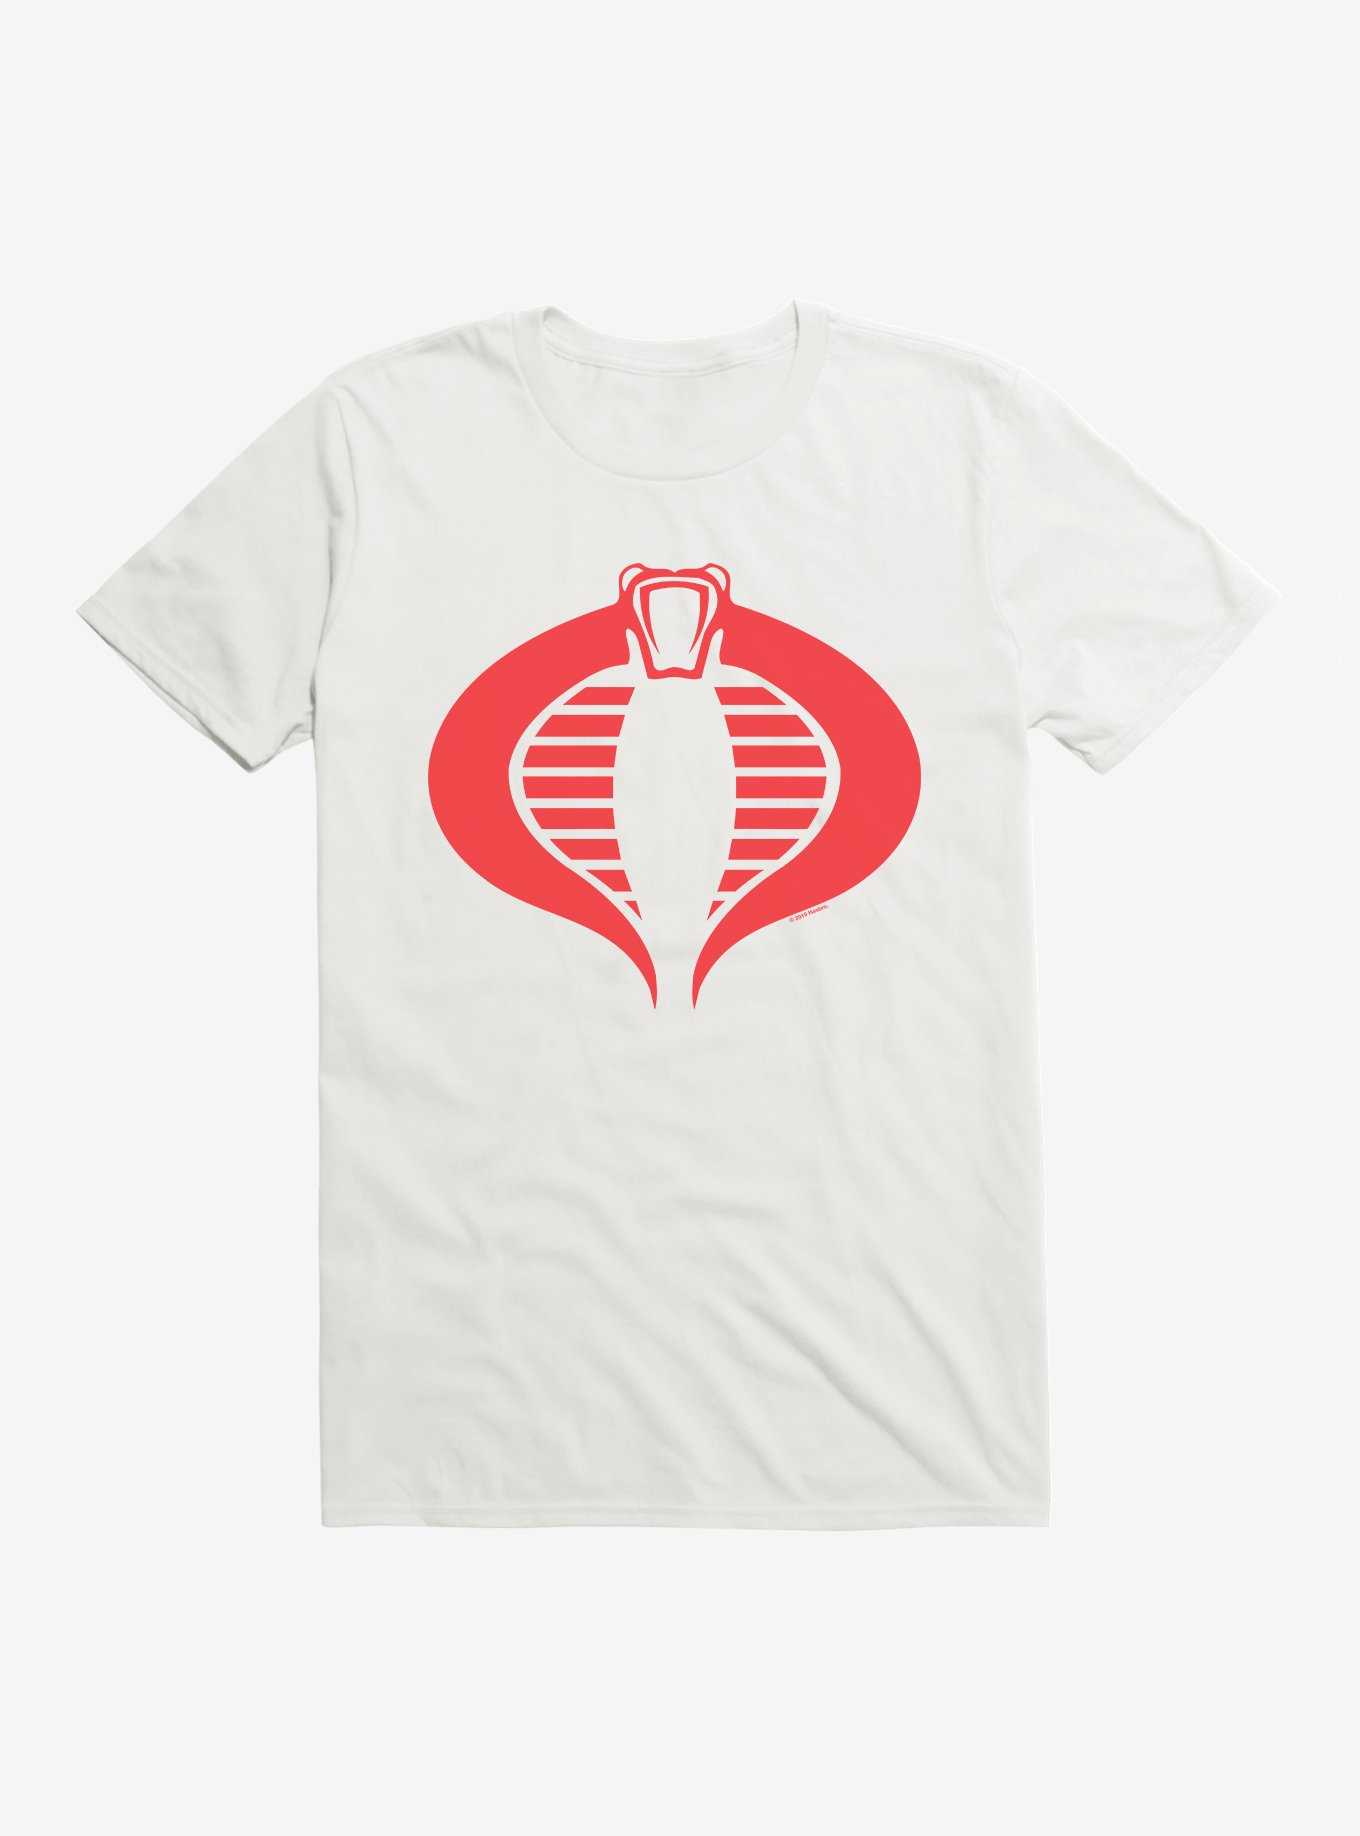 G.I. Joe Cobra Logo T-Shirt, , hi-res